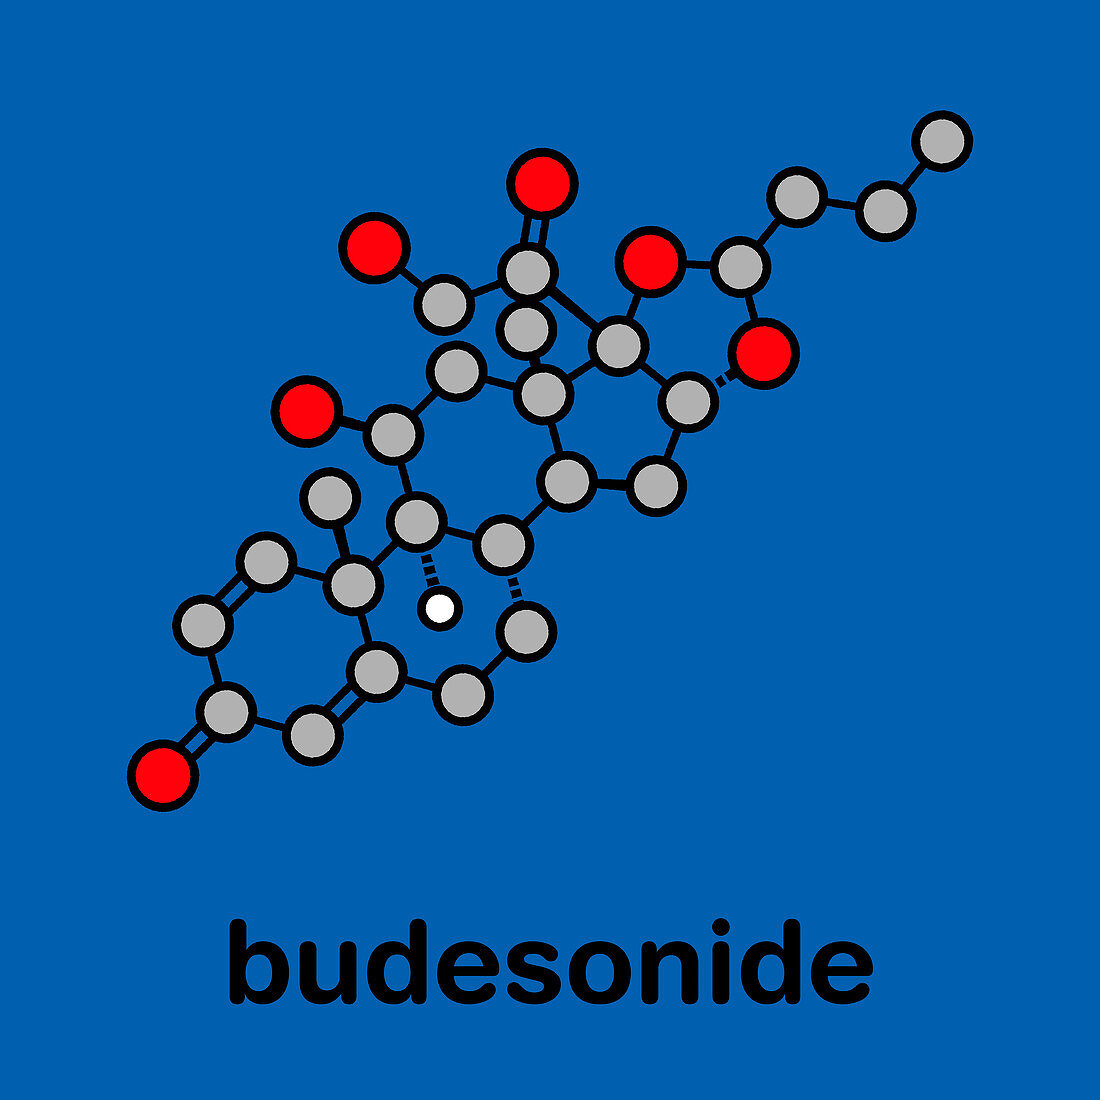 Budesonide corticosteroid drug, molecular model